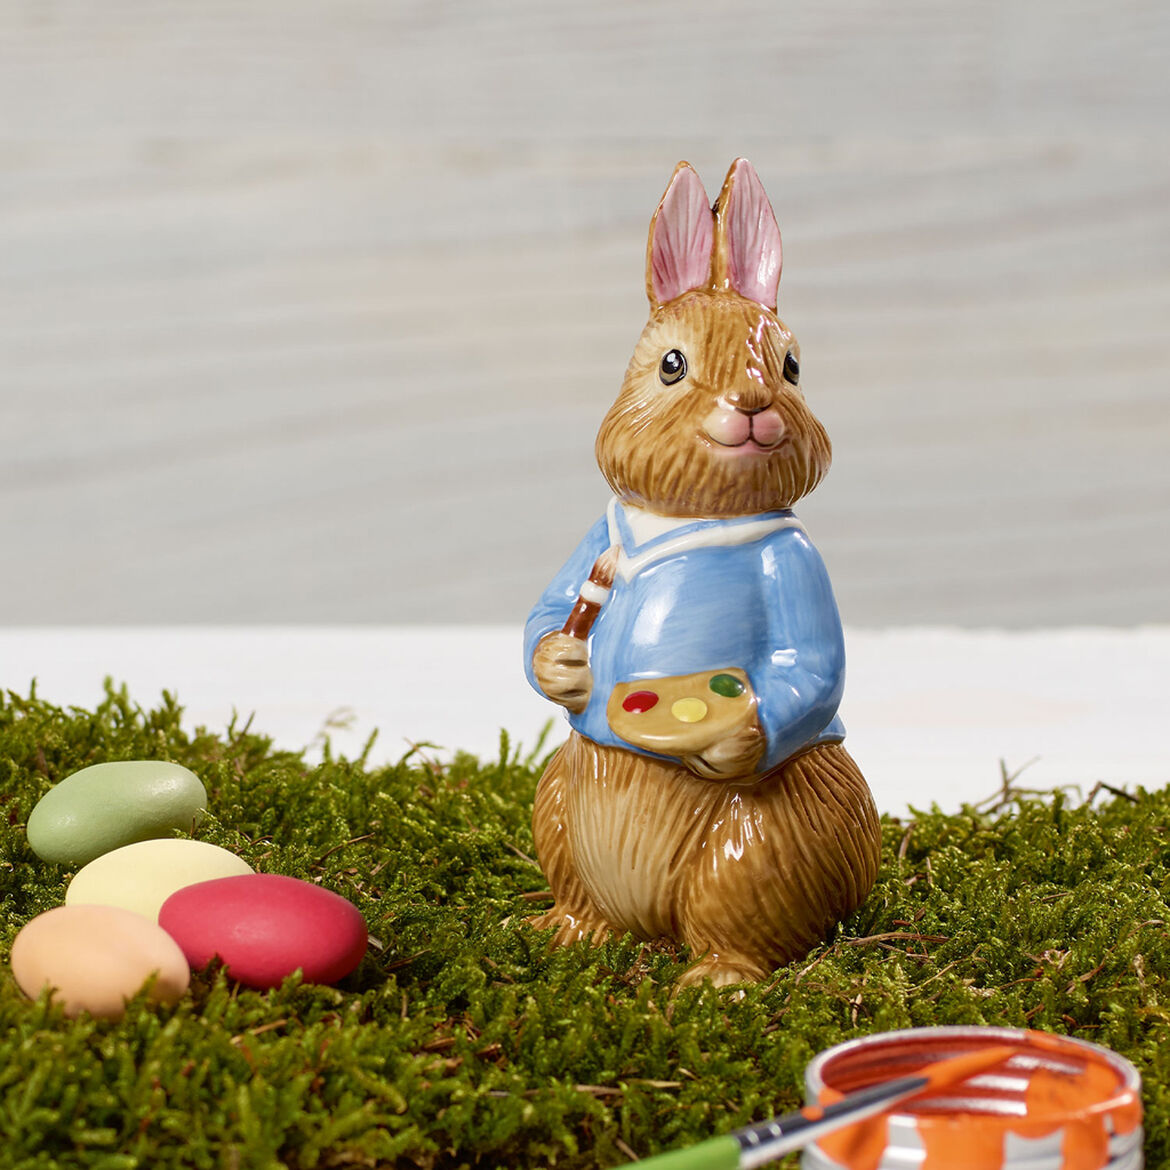 VILLEROY &amp; BOCH - Bunny Tales Max Figura Coniglio 11cm Decorazione Pasquale